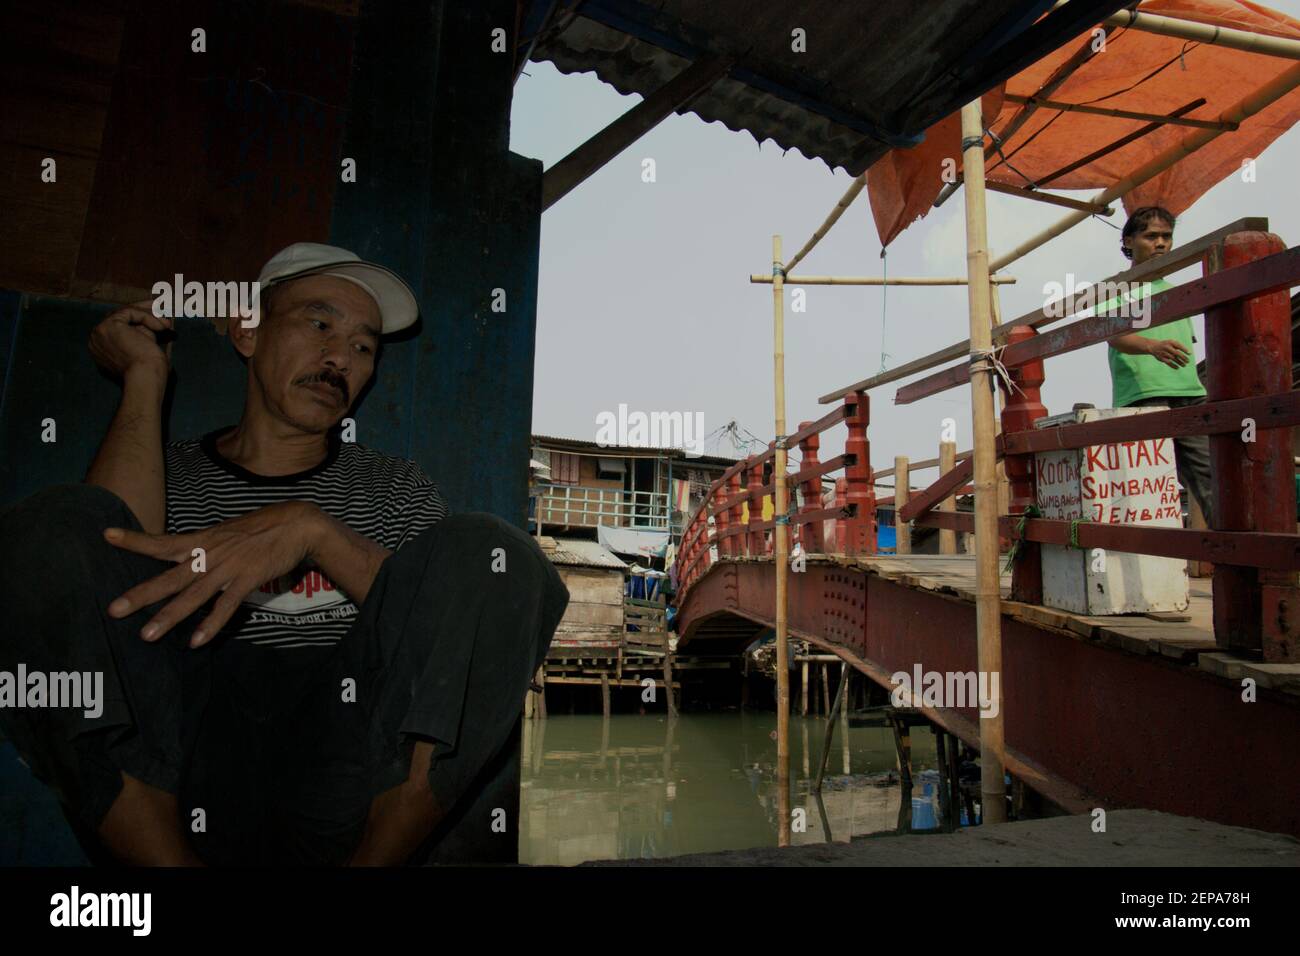 Portrait d'un homme comme il se détend à côté d'un pont sur un village populairement connu sous le nom de Luar Batang, sur l'estuaire de la rivière Ciliwung, près du port traditionnel de Sunda Kelapa dans la zone côtière de Jakarta, Indonésie (2008). Banque D'Images